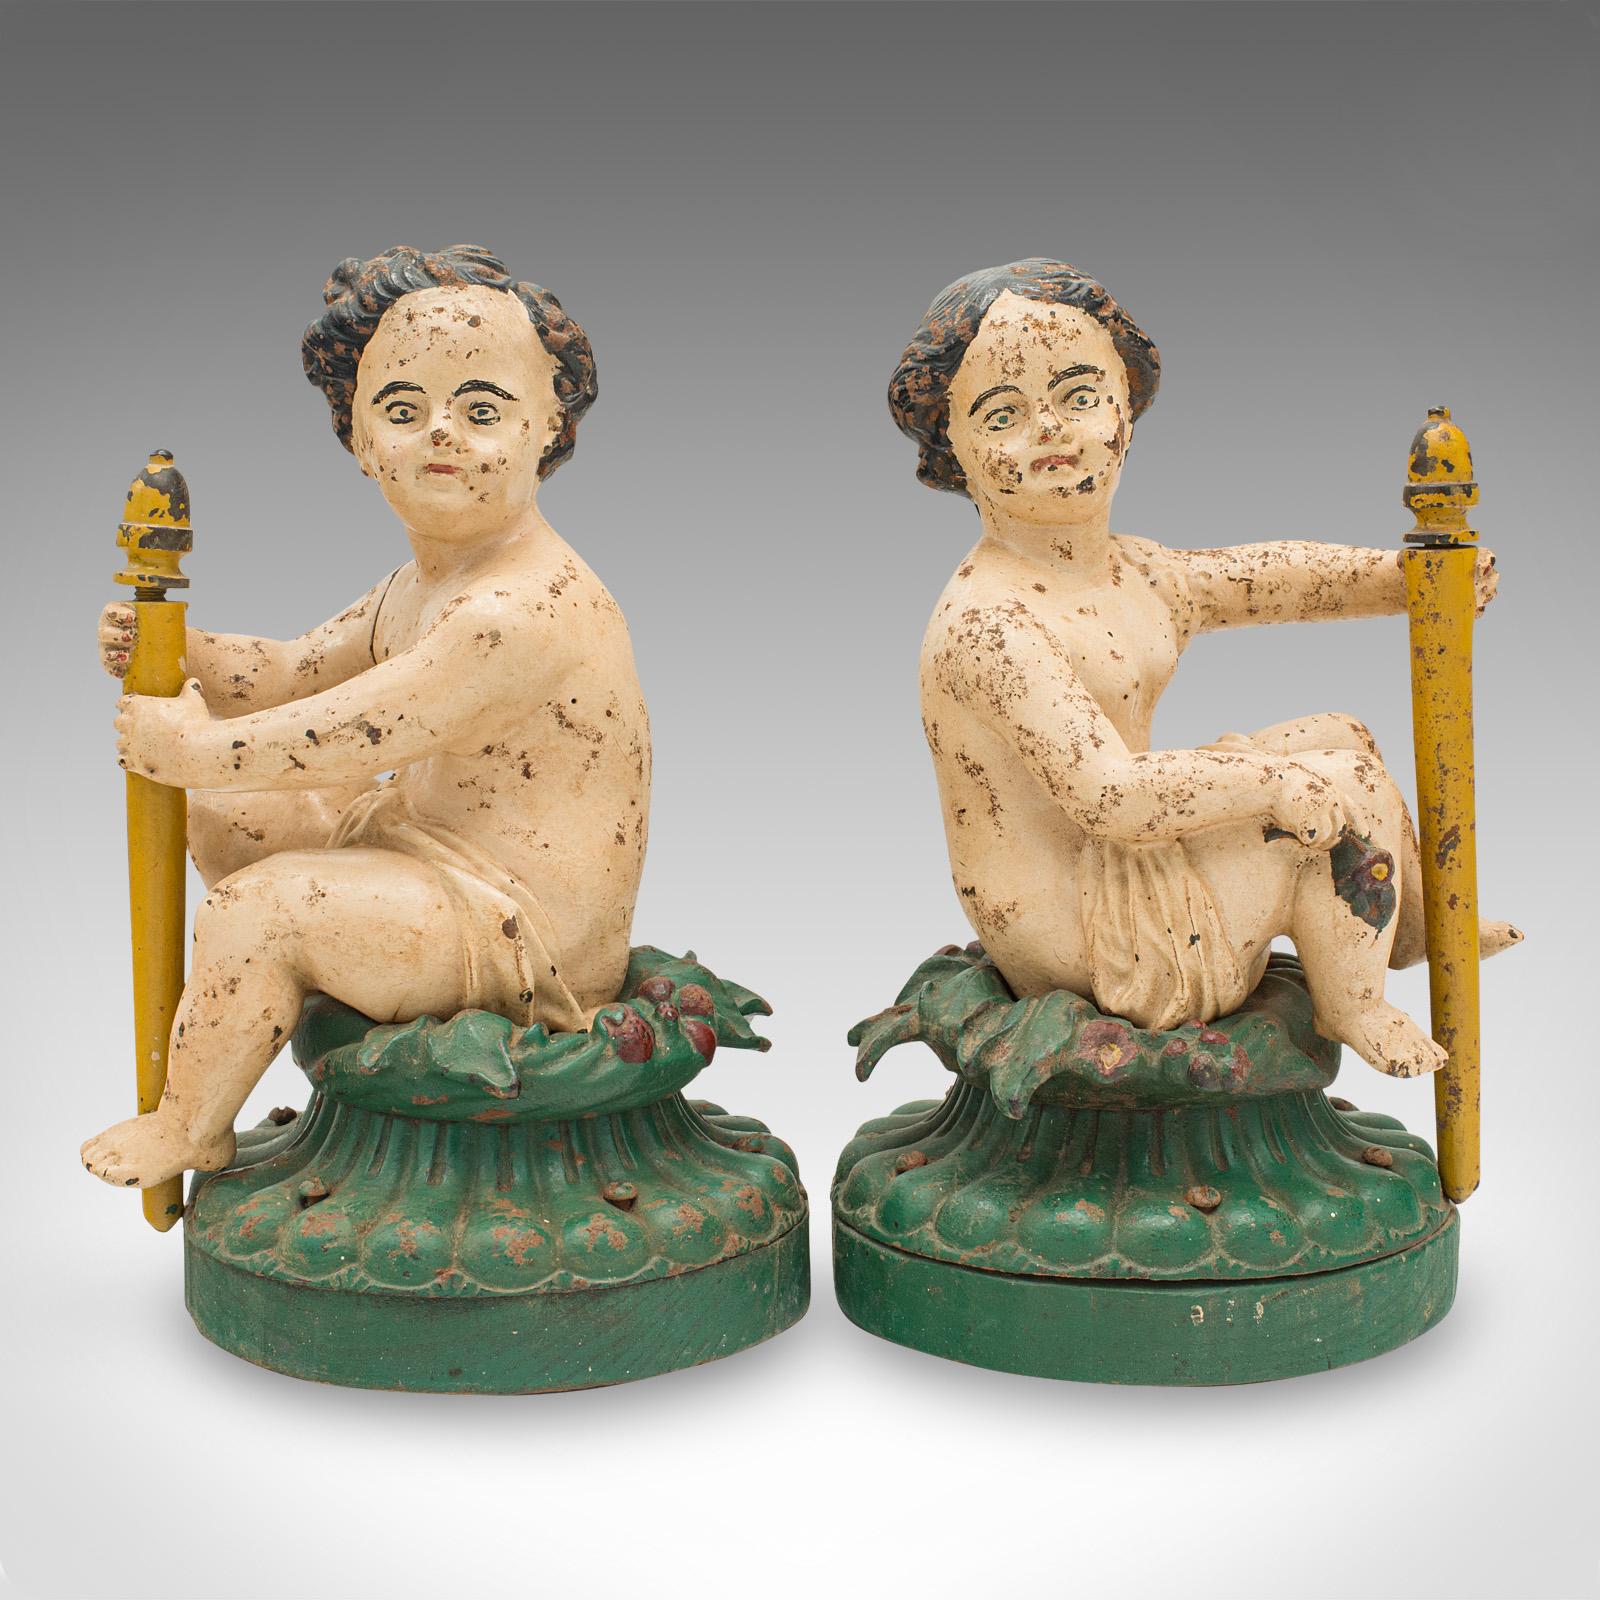 Il s'agit d'une paire de figurines décoratives anciennes. Putto anglais en fonte peinte sur base en orme, datant de la période victorienne, vers 1870.

Des figurines délicieusement insolites à l'allure rubenesque
Patine d'ancienneté souhaitable sur